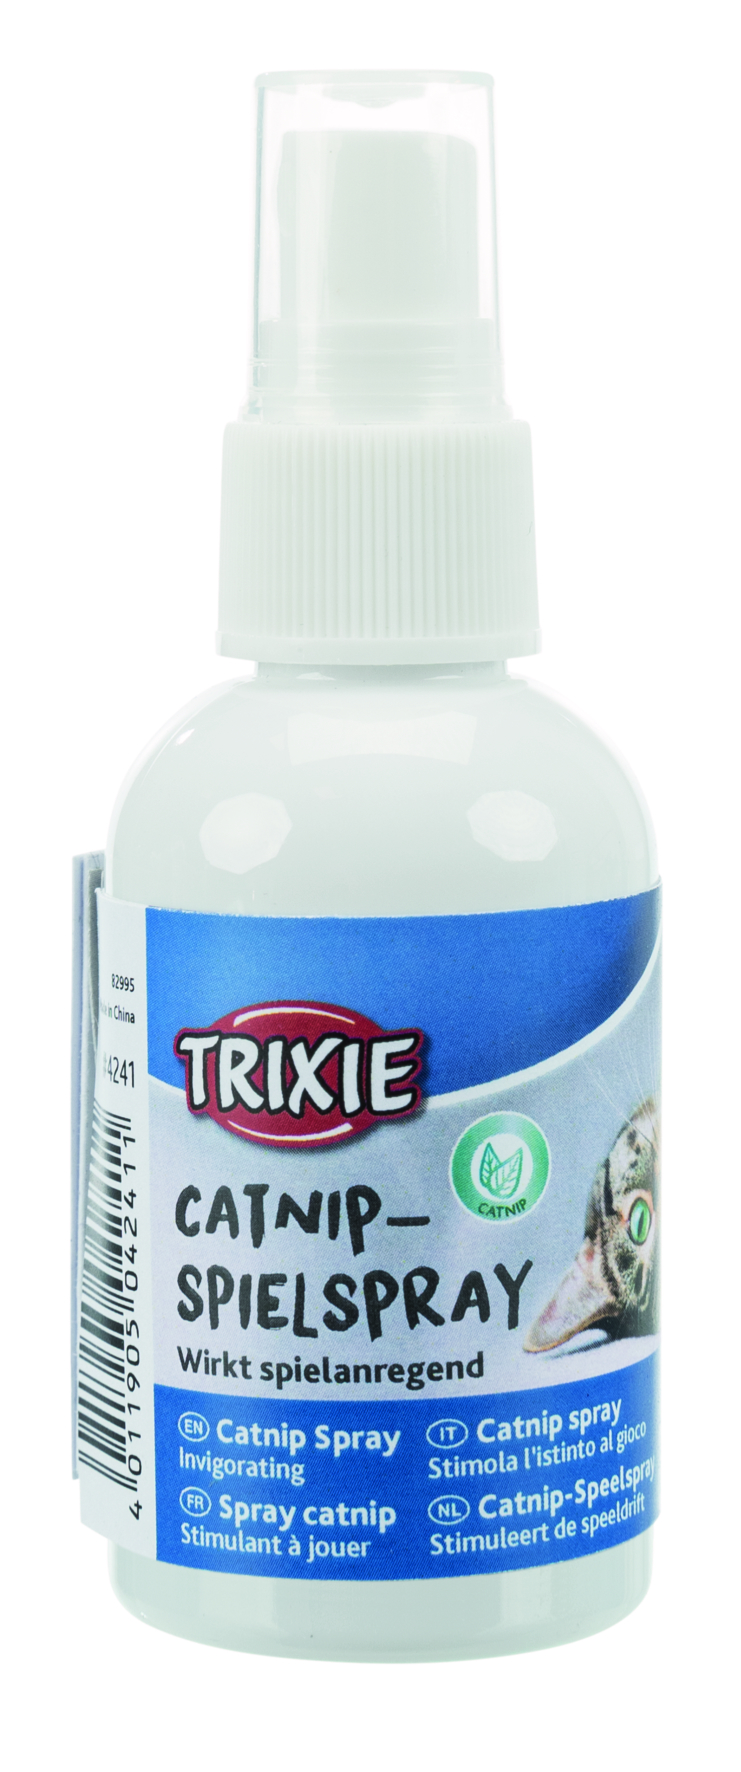 Trixie Catnip -Spielspray, 50 ml